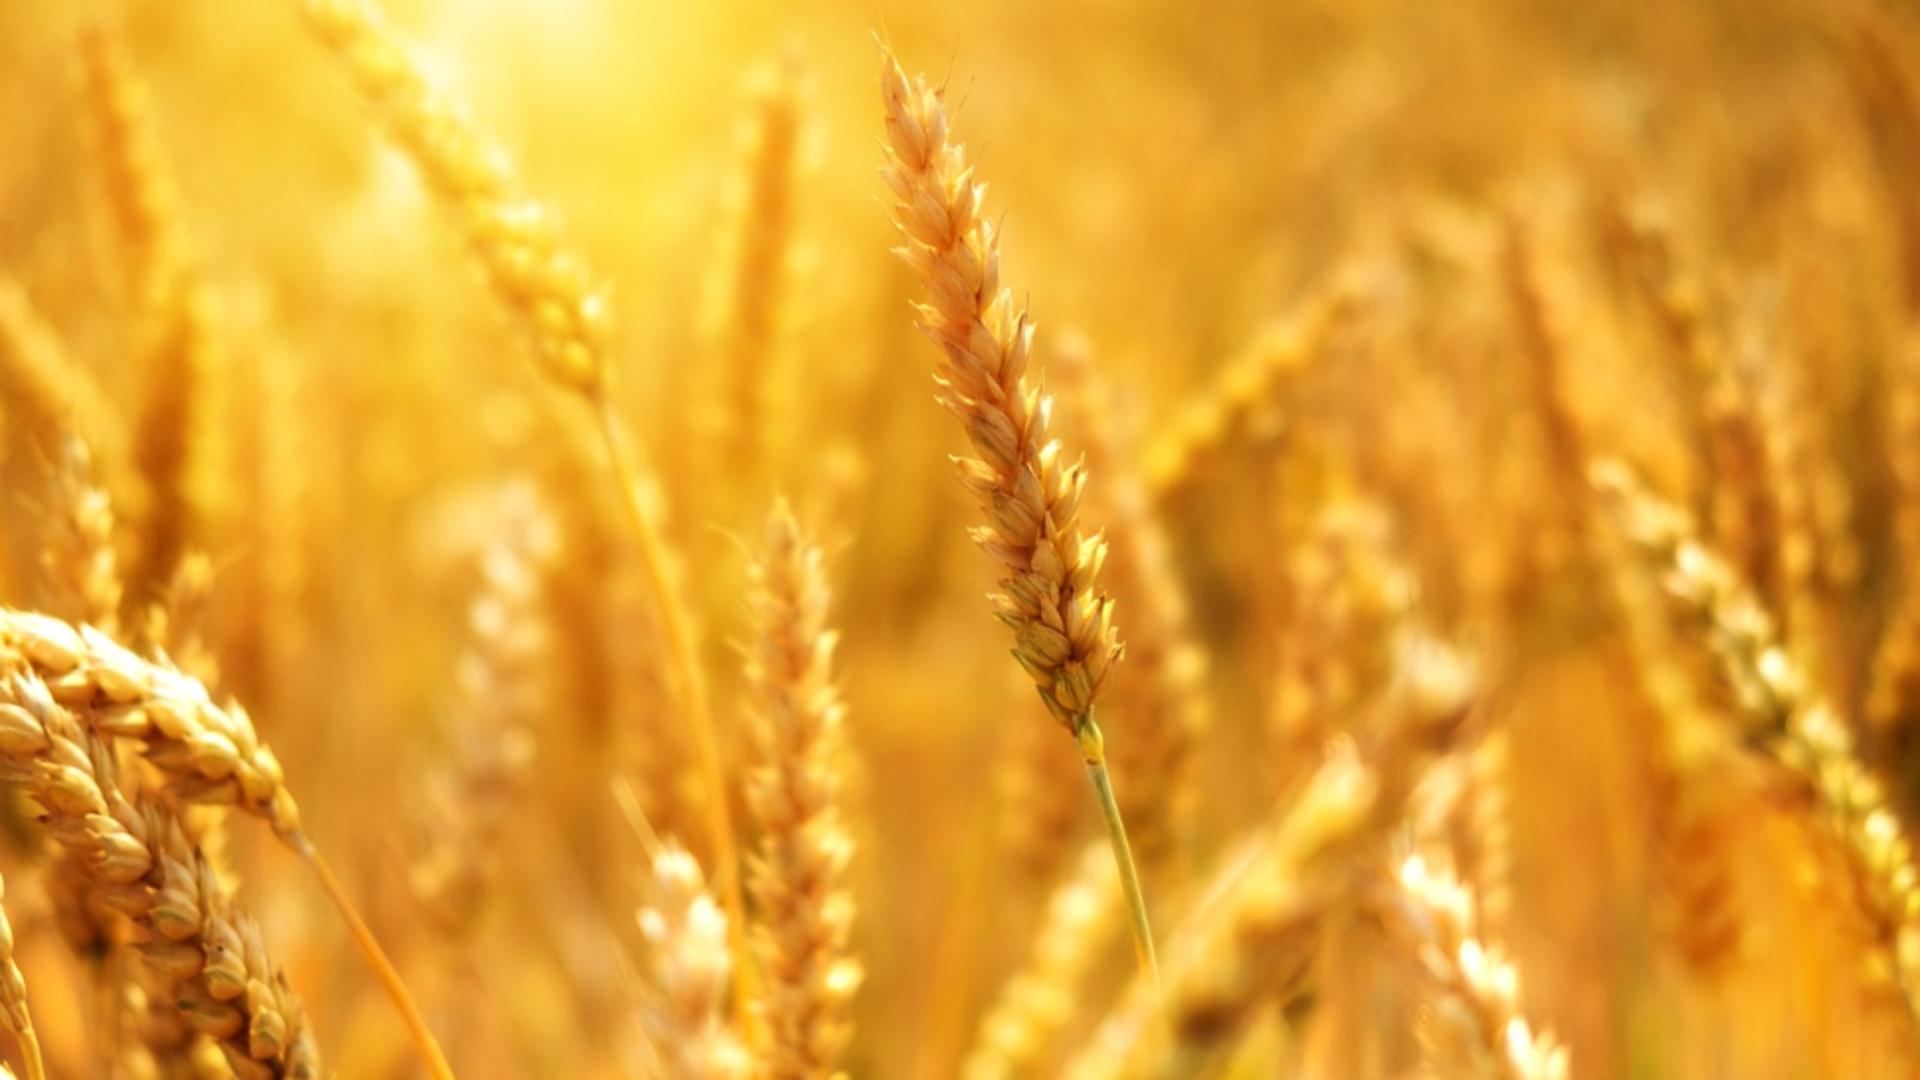 Ucraina vrea să dea în judecată Polonia, Ungaria şi Slovacia din cauza interdicţiilor impuse la importurile de cereale  